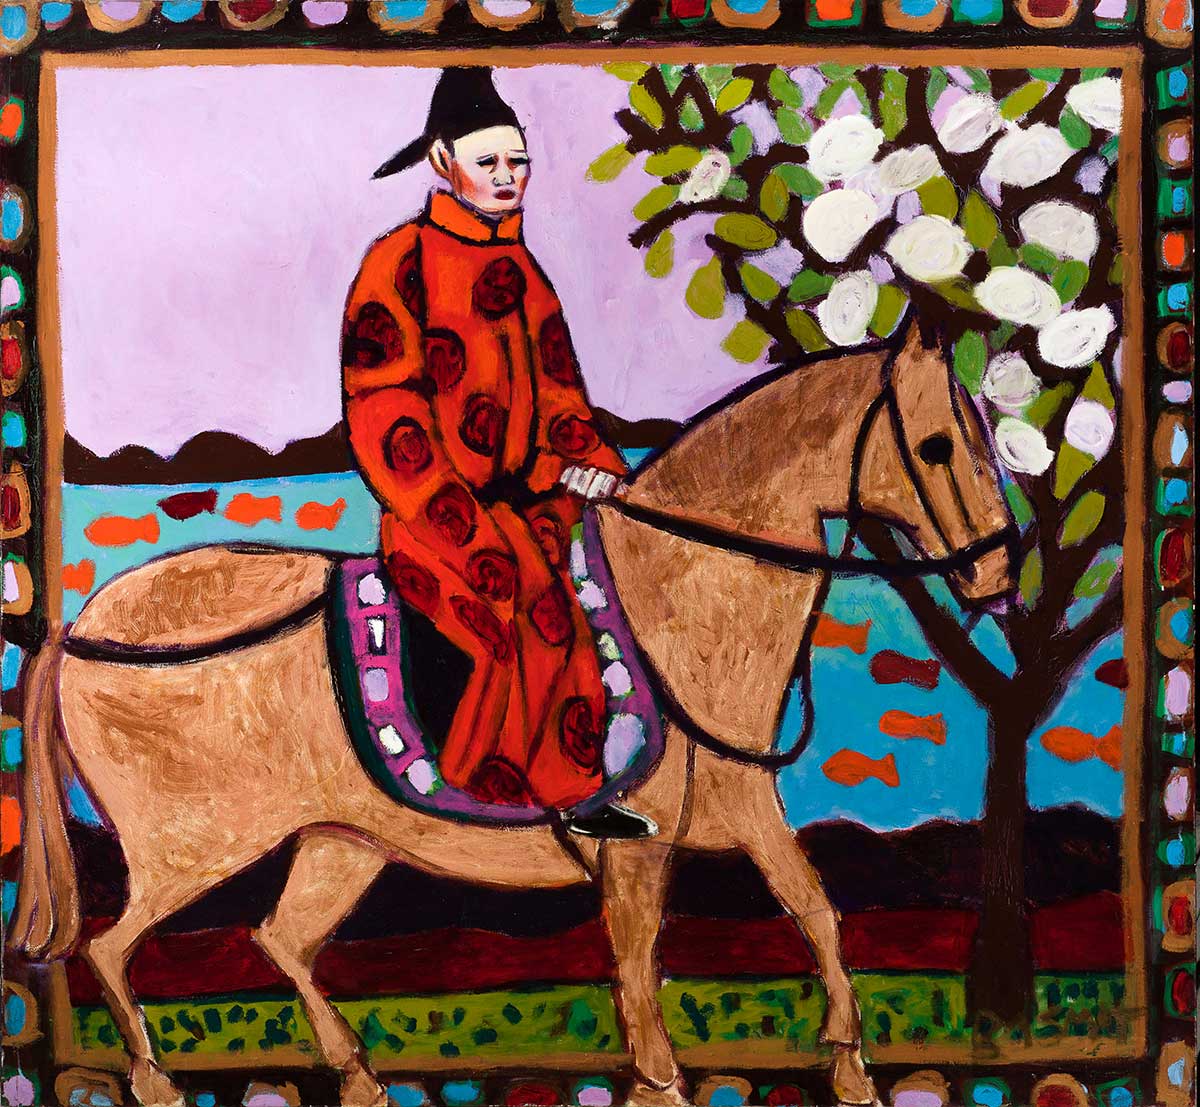    The Horseman &nbsp; - &nbsp;160cm x 170cm, Oil on Canvas  